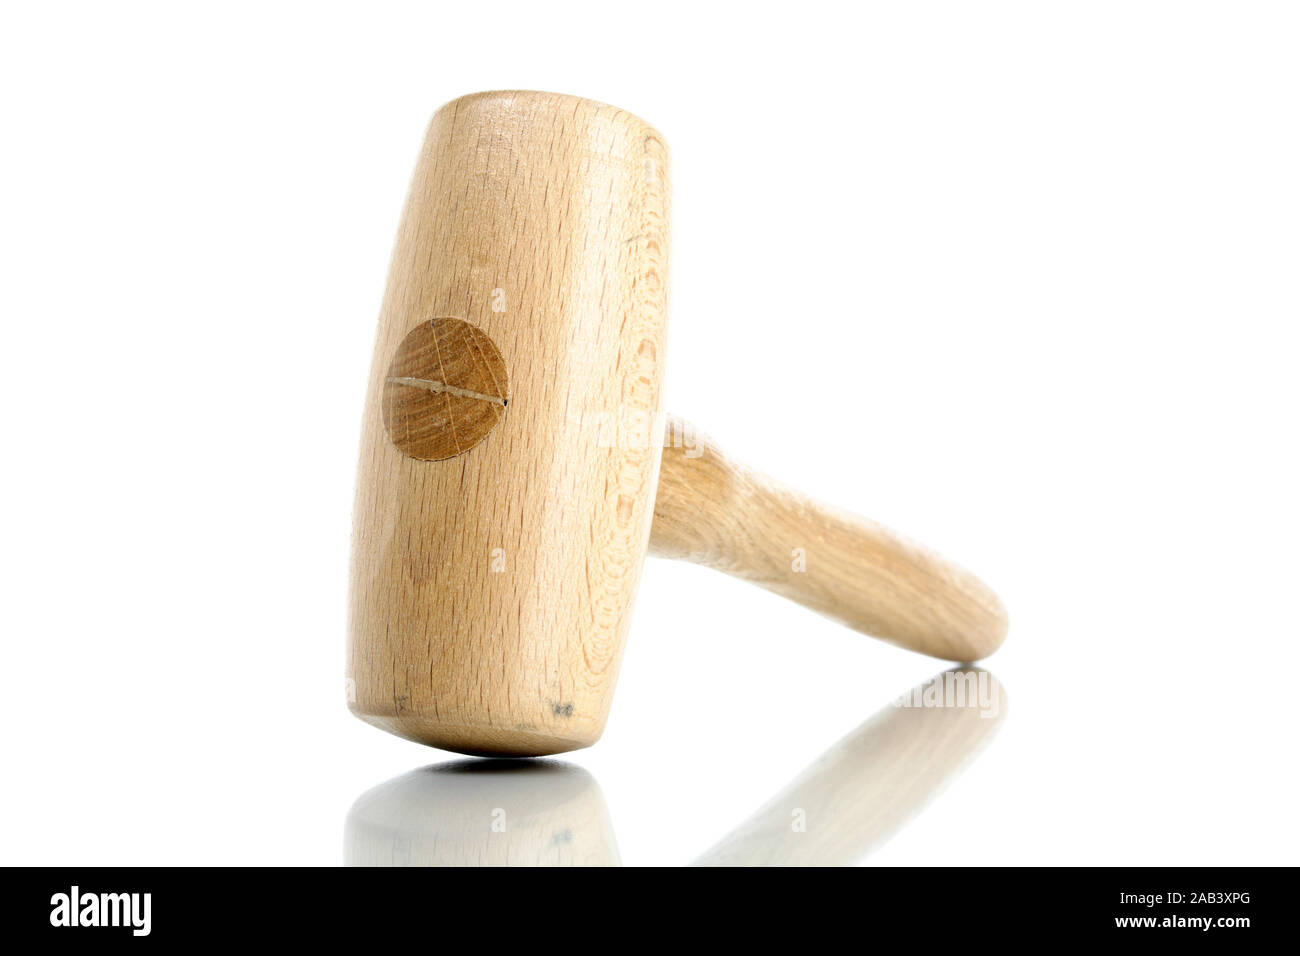 Holzhammer |Wooden mallet| Stock Photo